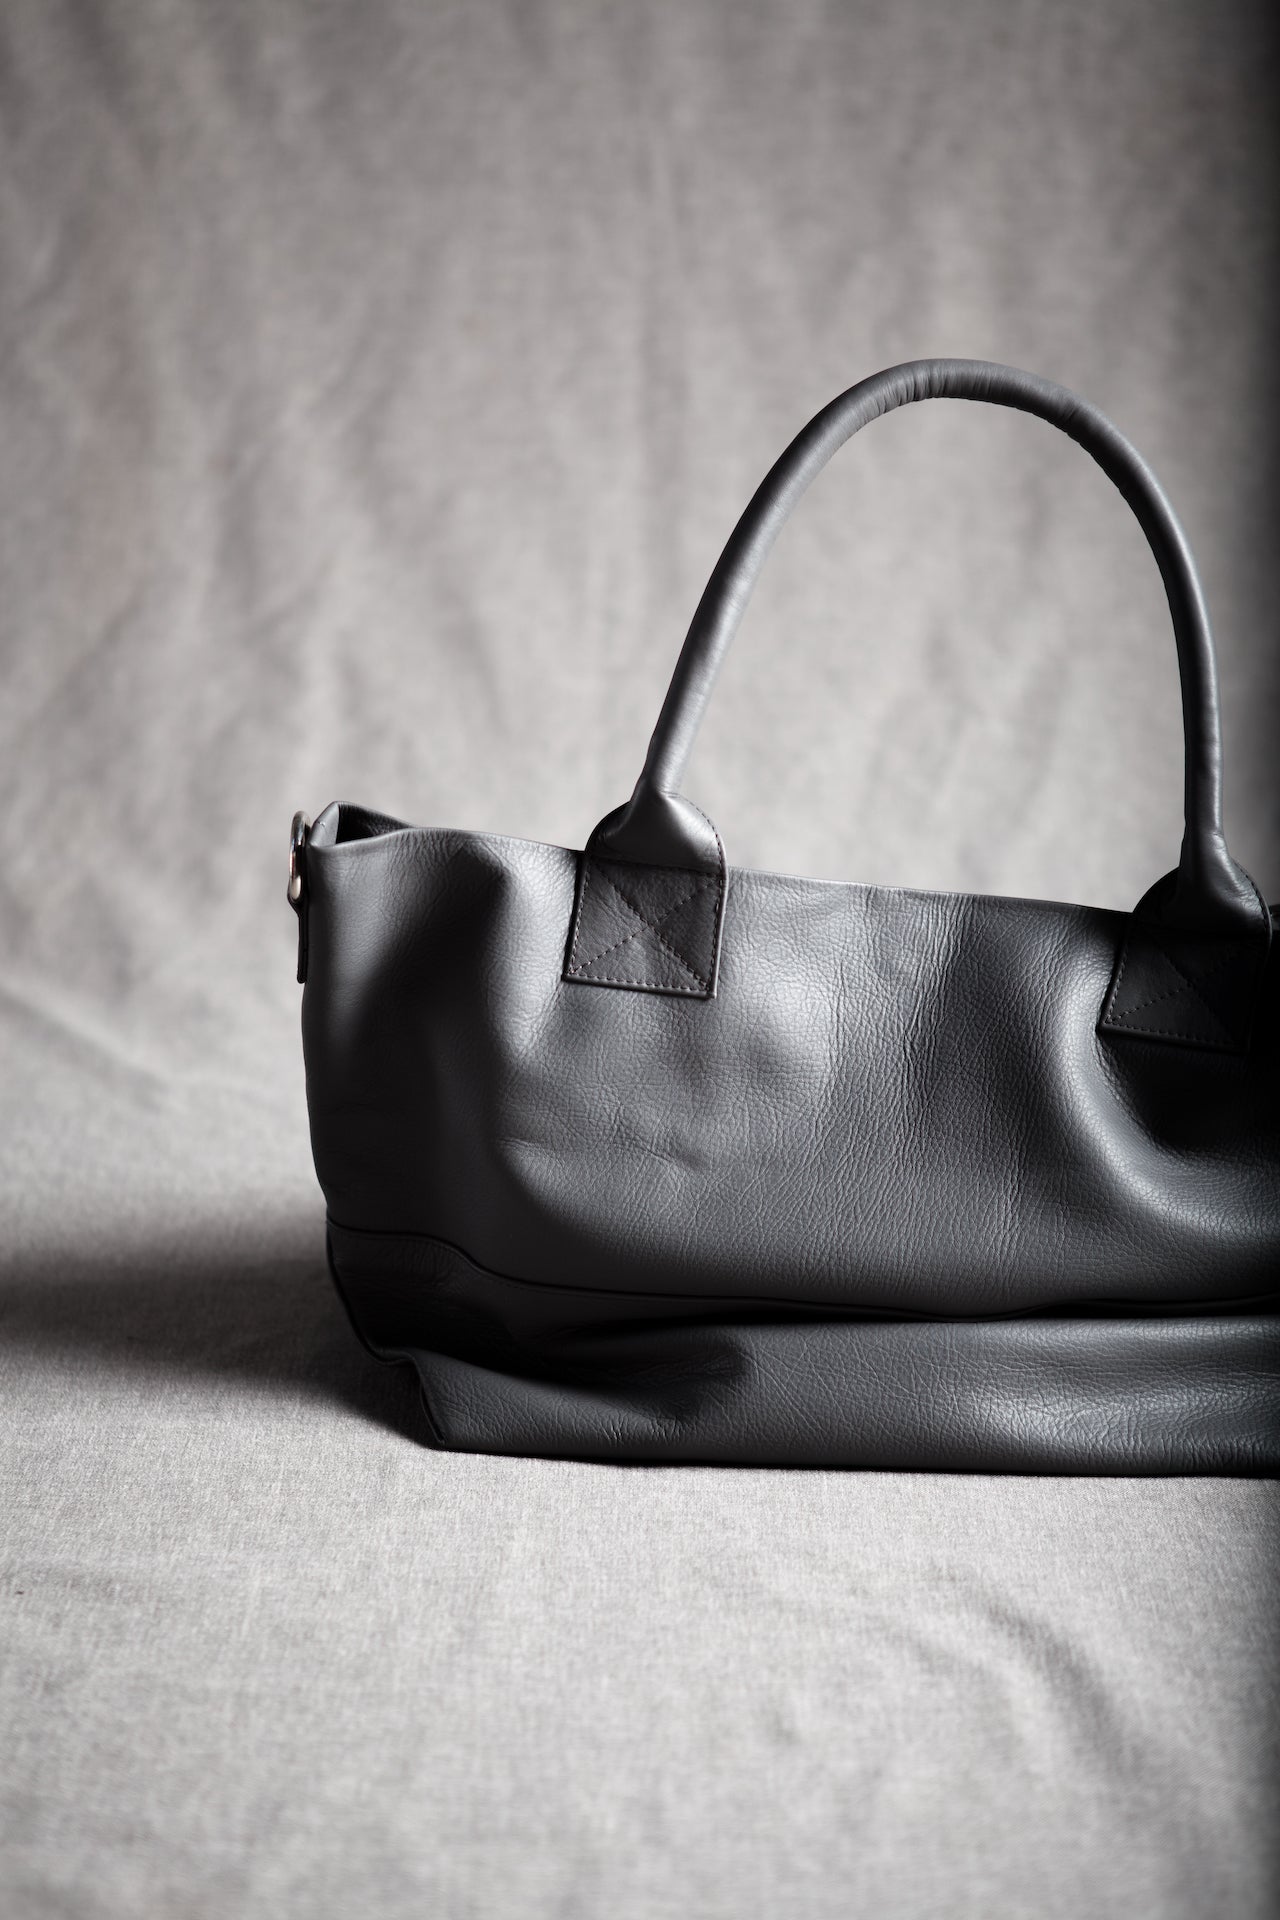 Paris Leather Tote Bag - Grey